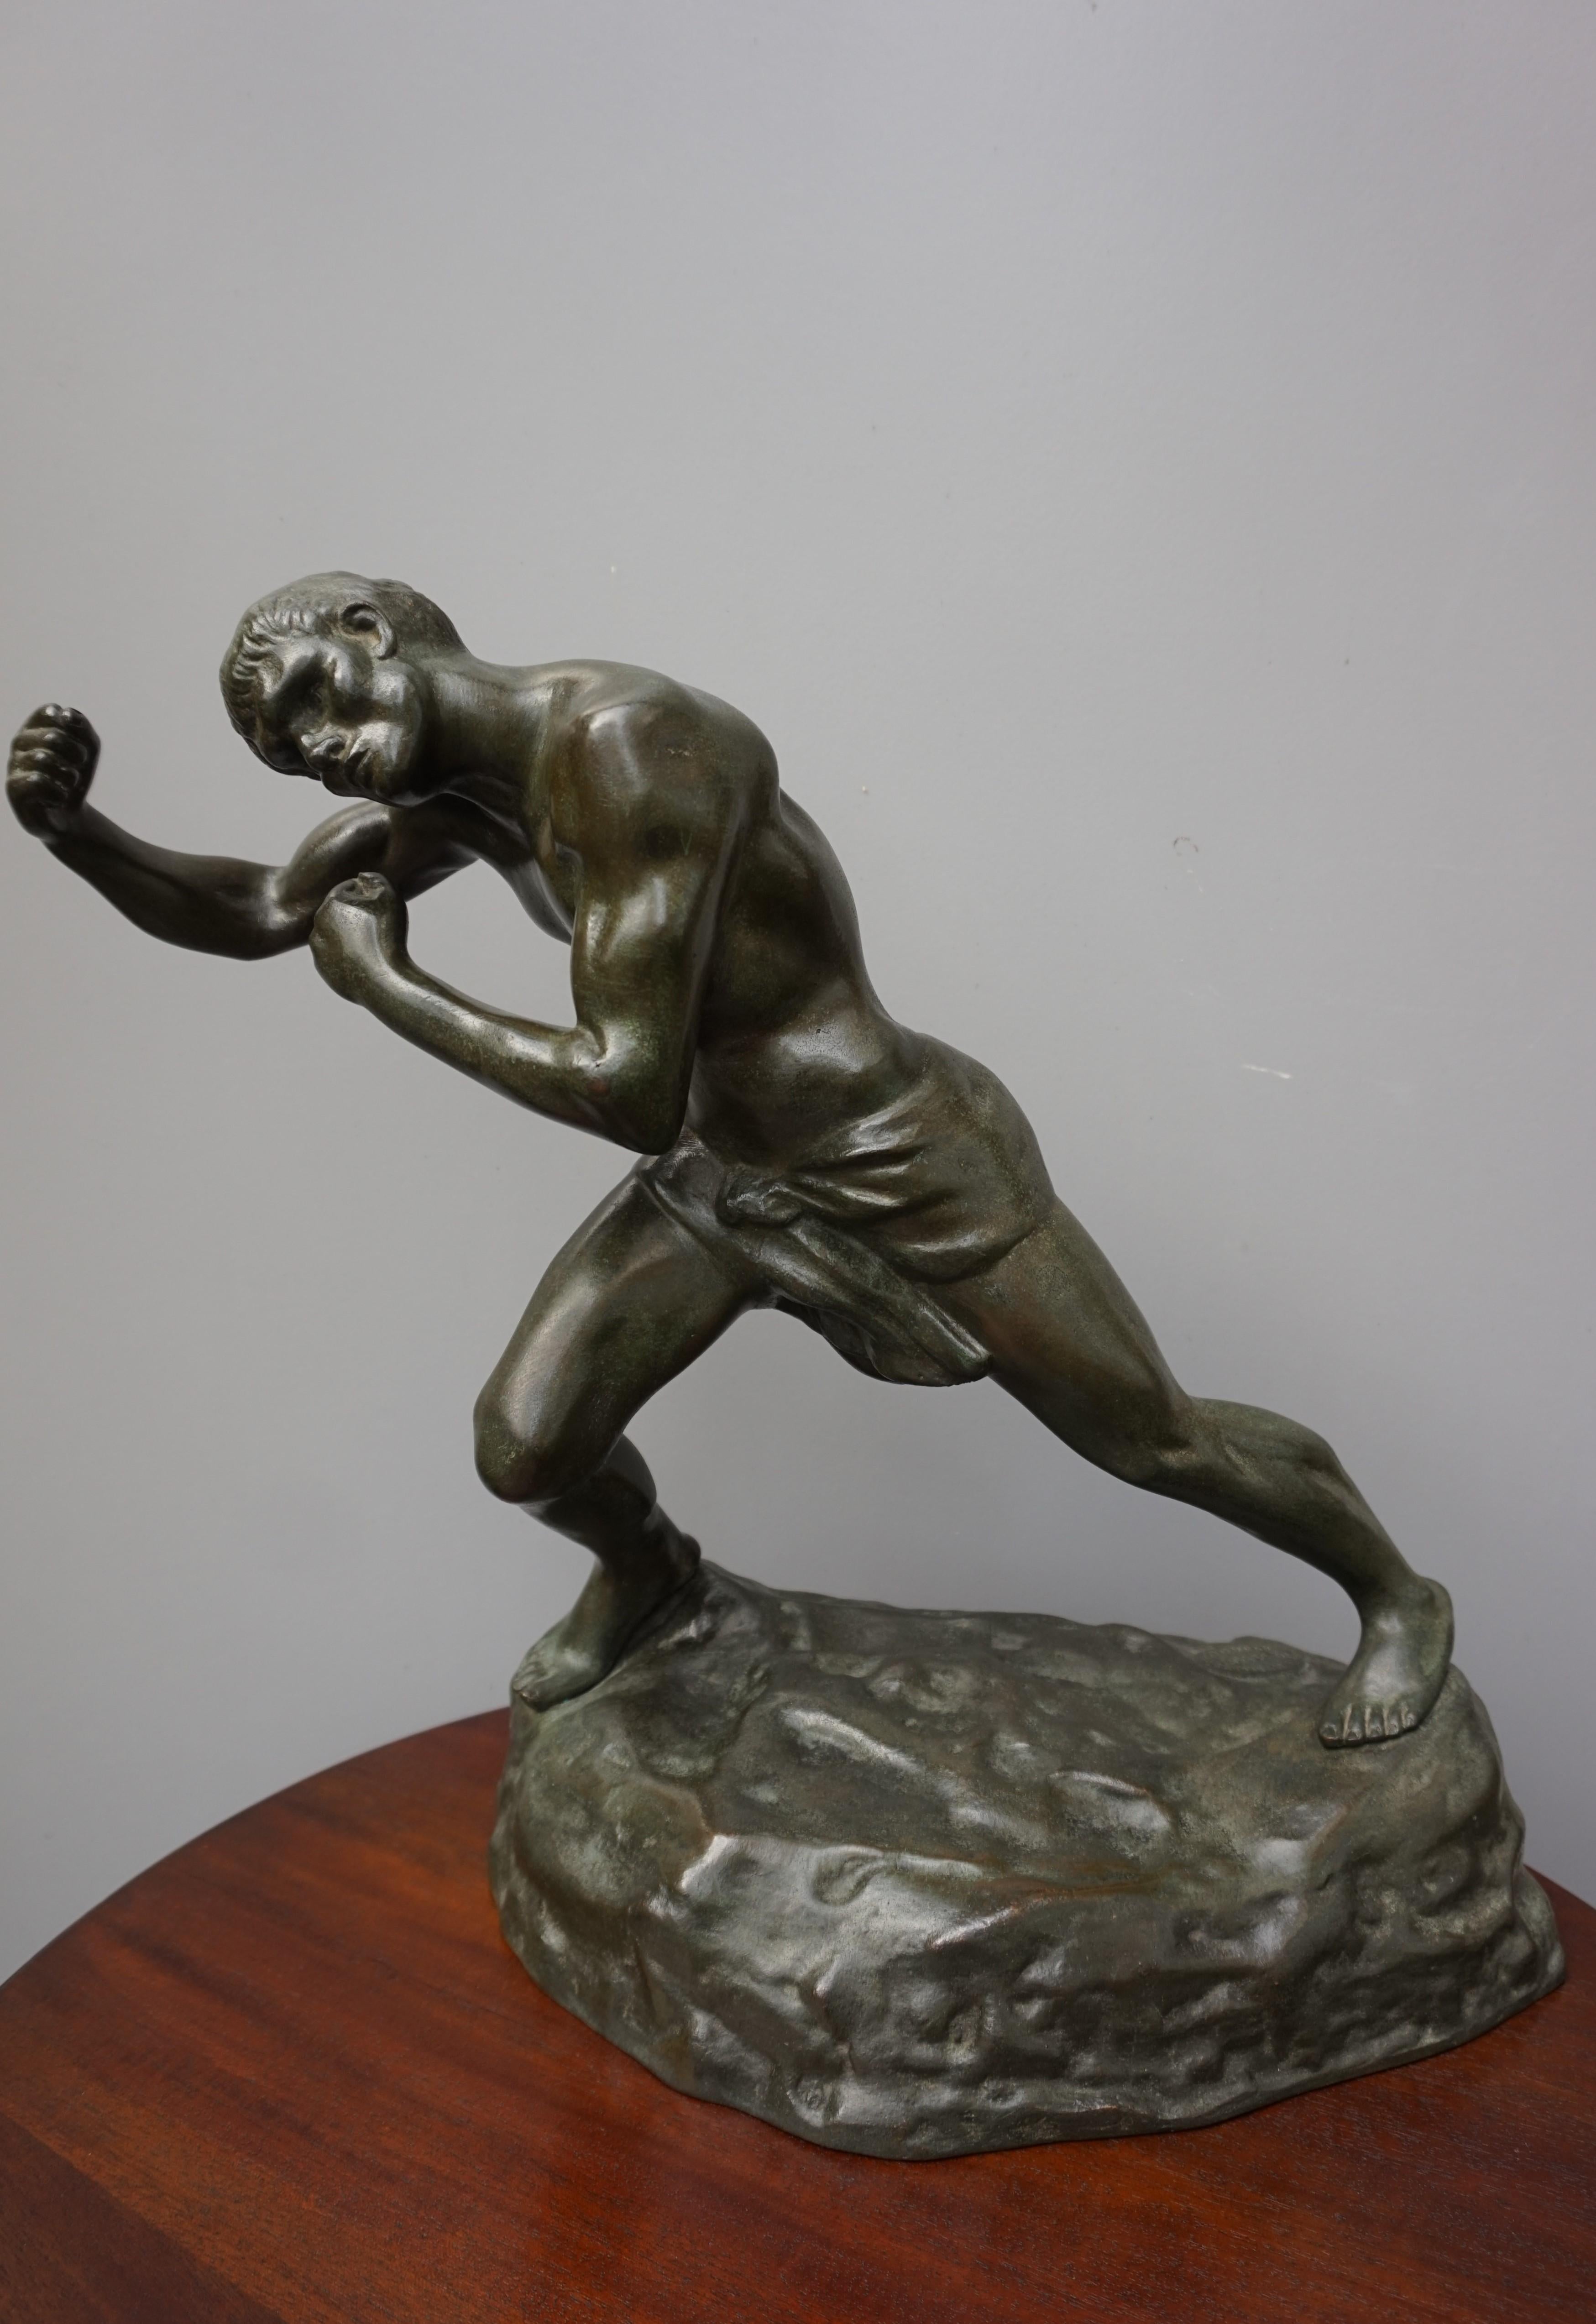 Puissante sculpture en bronze d'un combattant athlétique et déchiré.

Cette œuvre d'art, volumineuse et lourde, est aussi belle que le jour où elle a été fabriquée à la main. Le sculpteur belge Jef Lambeaux (1852-1908) avait un penchant pour la